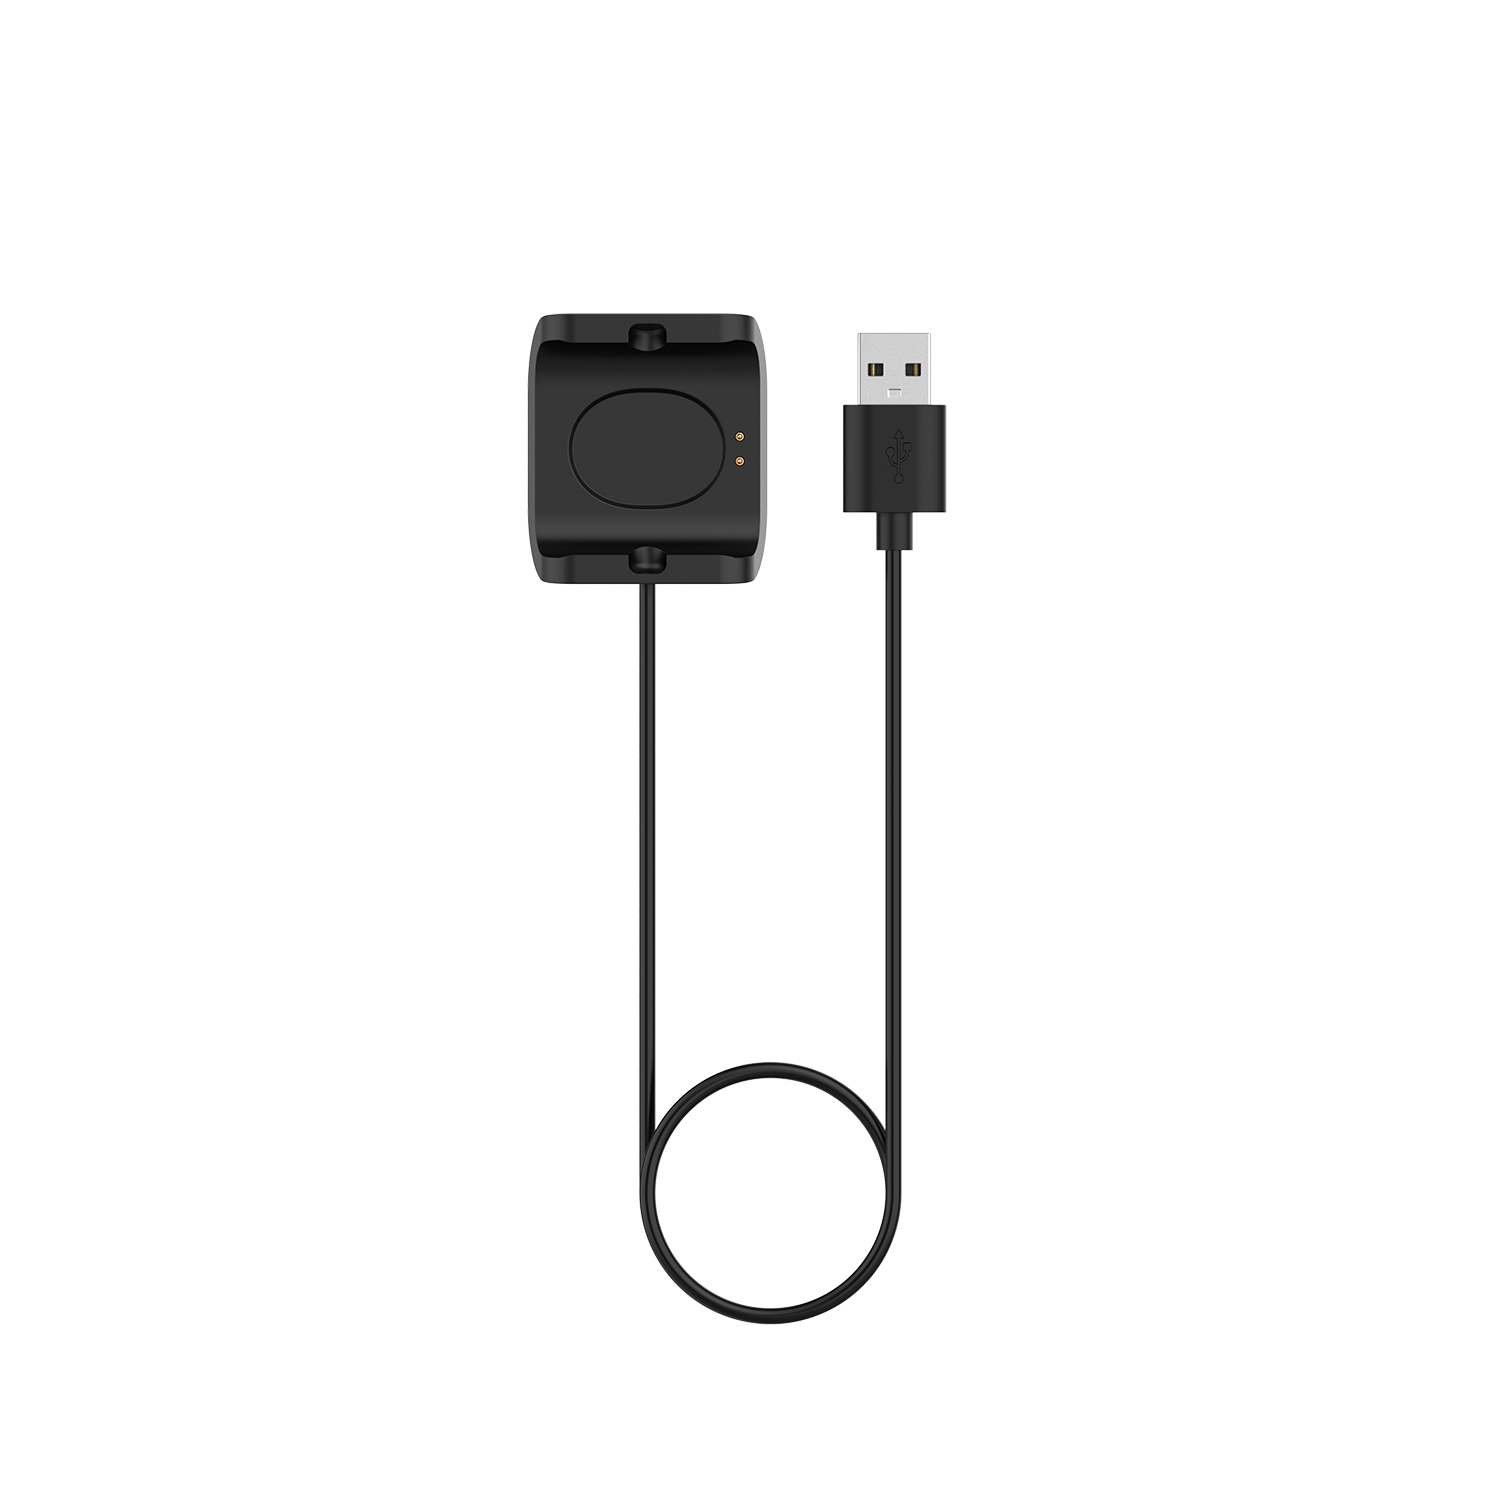 Cáp Dock sạc USB Smart Band Tương thích với Bộ sạc kẹp Amazfit bip S / 1s / A1805 / A1916, 1 mét